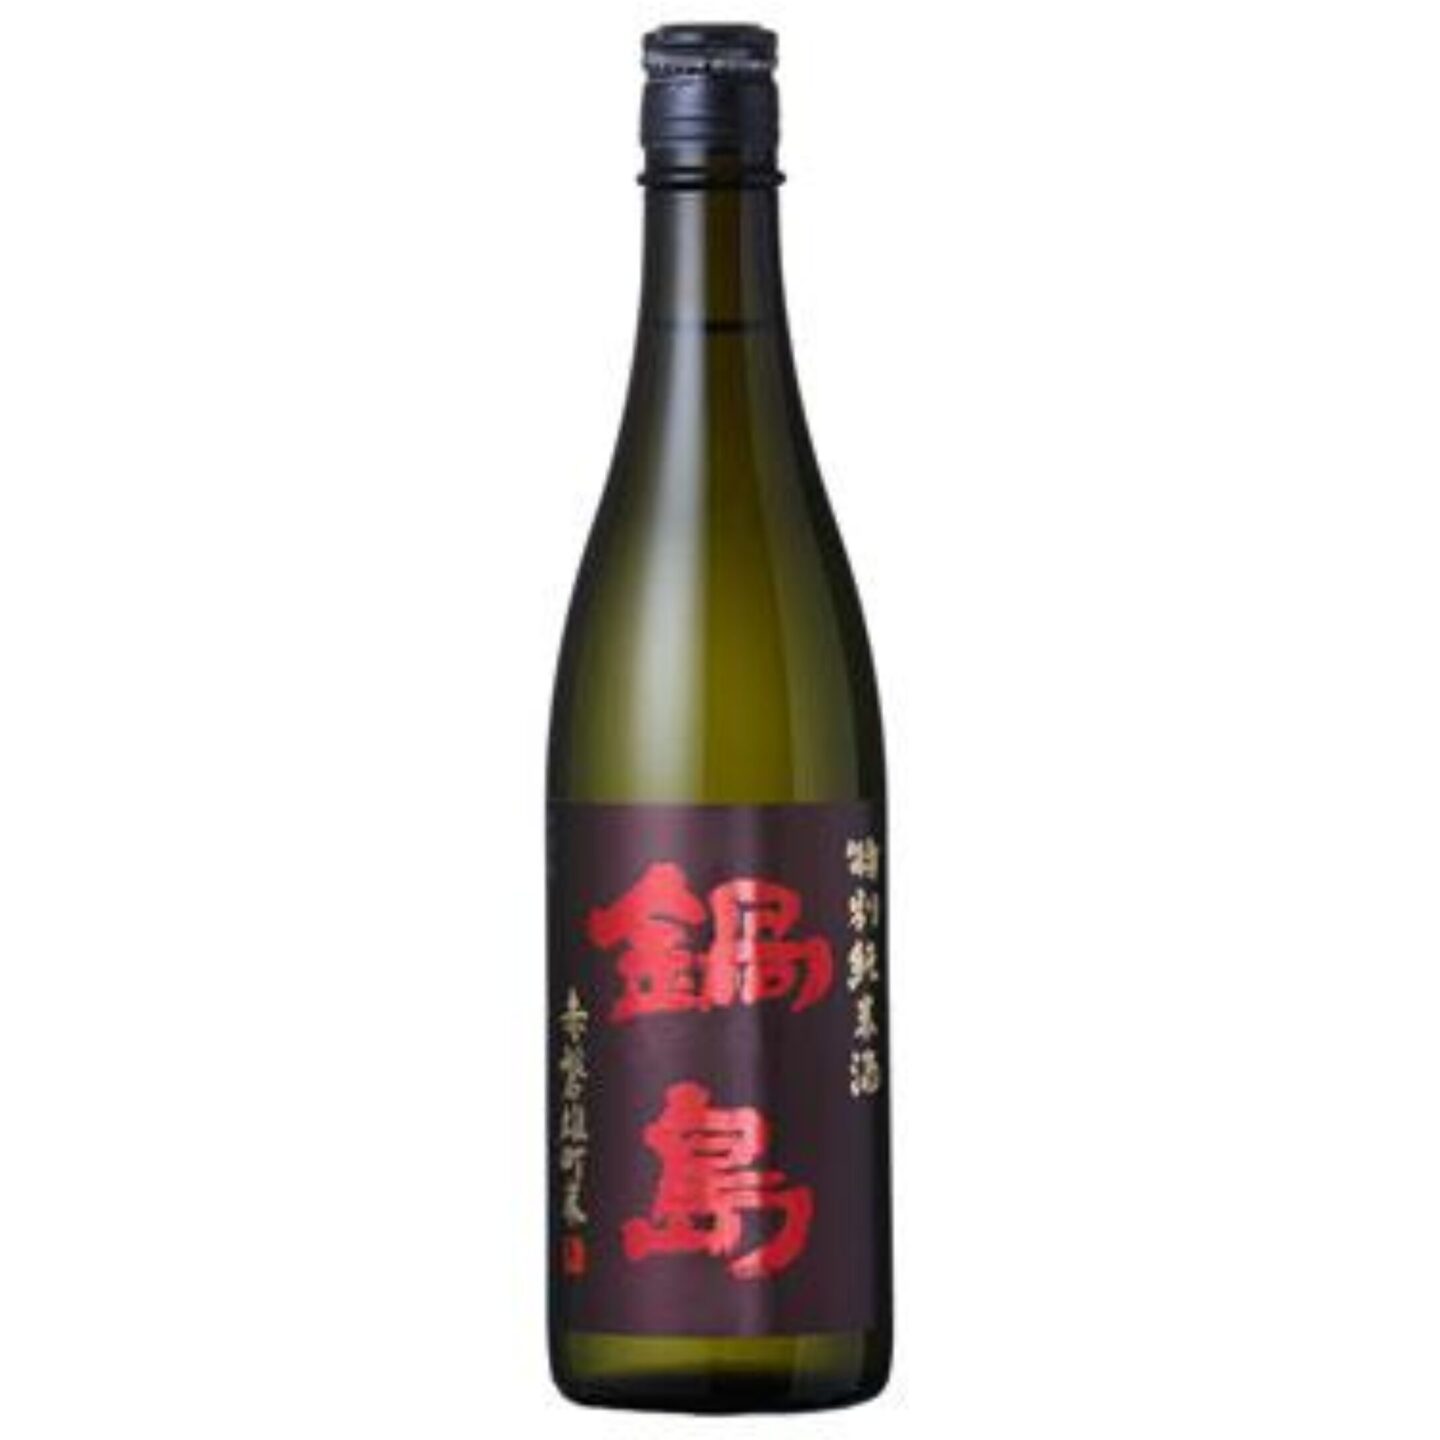 鍋島 特別純米酒 クラッシック 赤磐雄町米